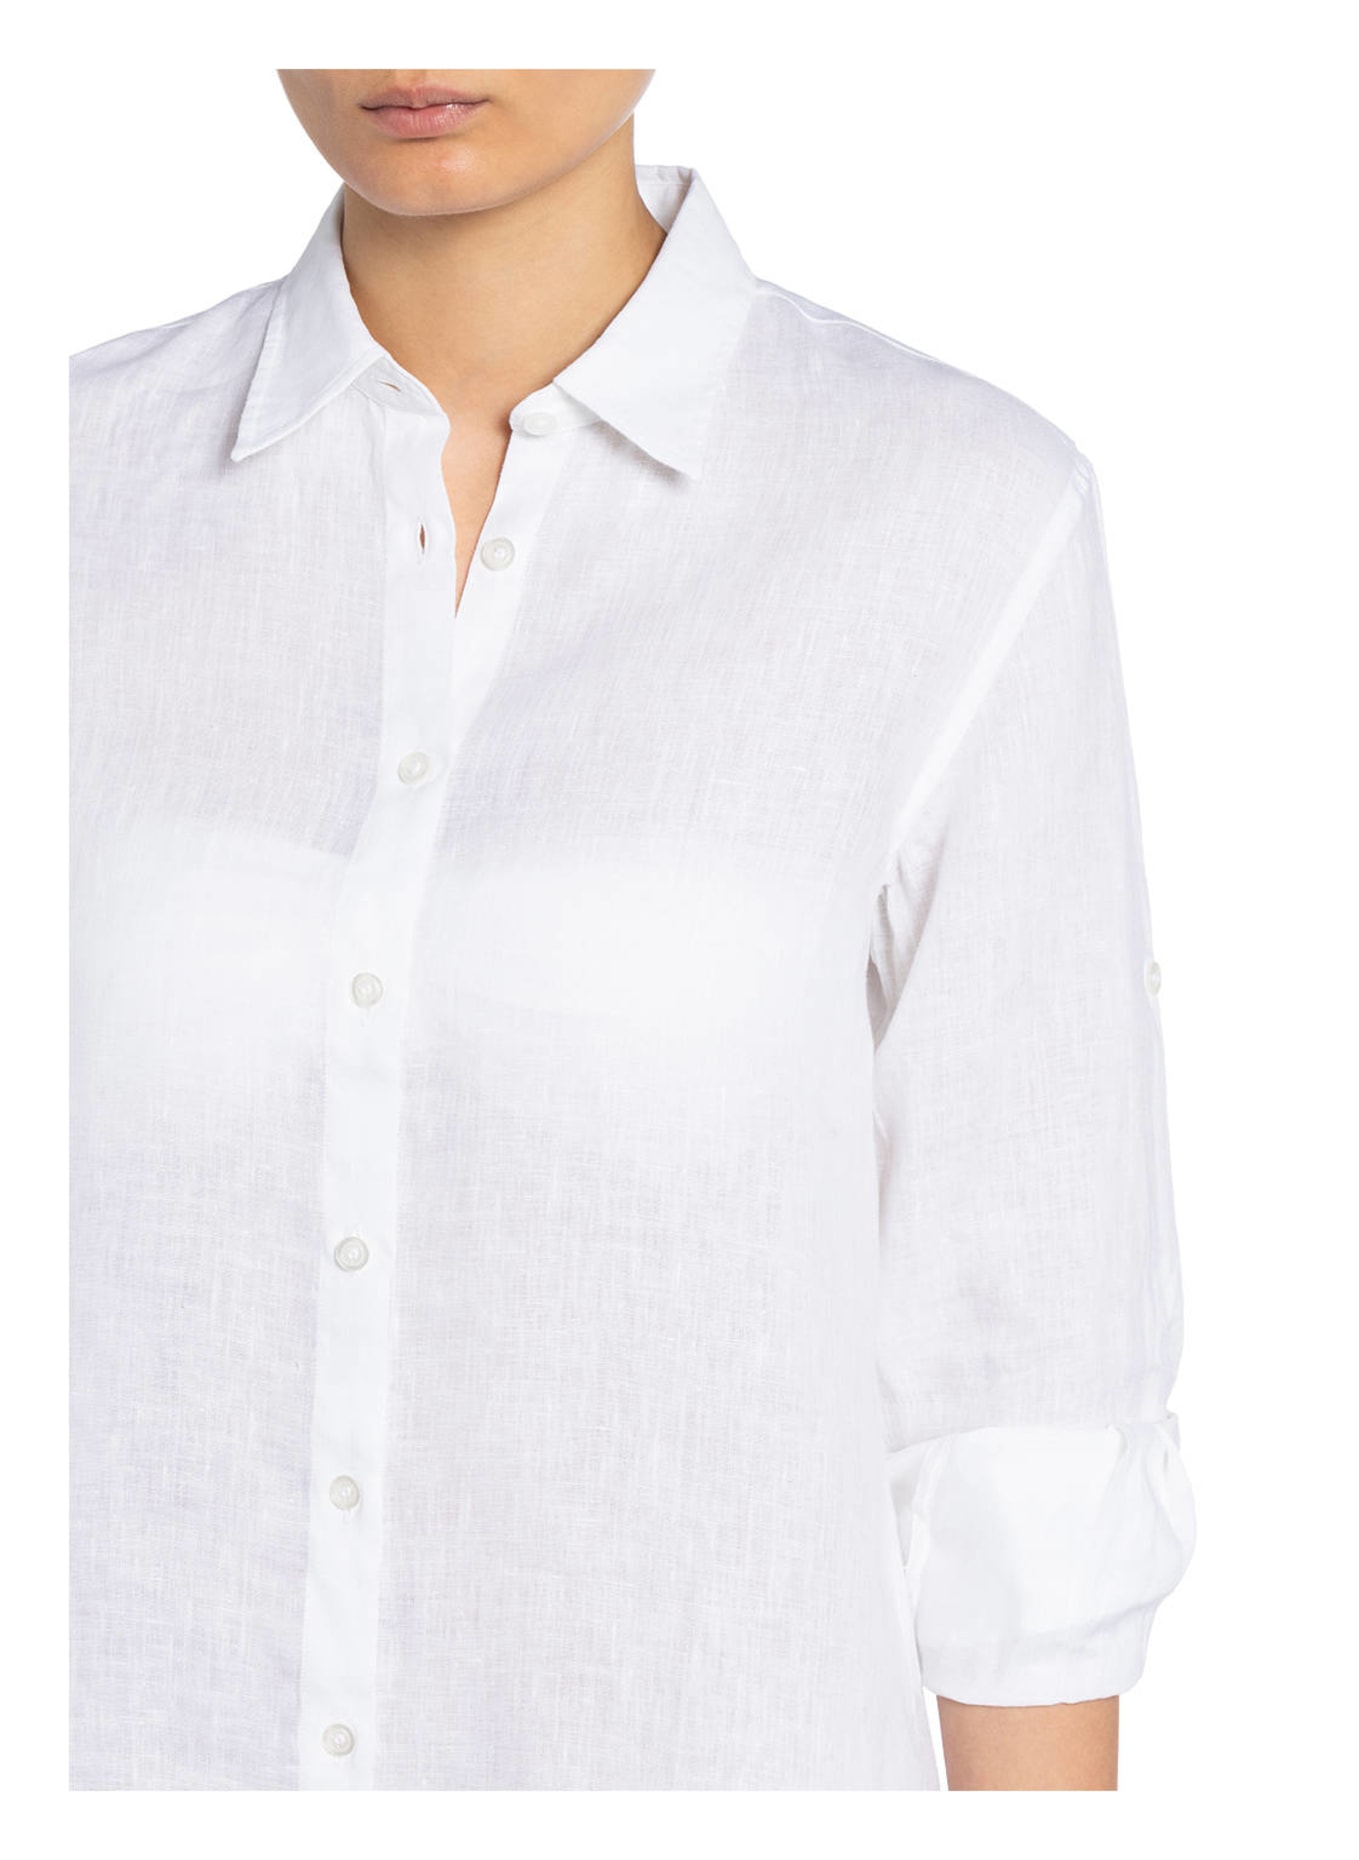 VILEBREQUIN Shirt dress FRAGANCE made of linen, Color: WHITE (Image 4)